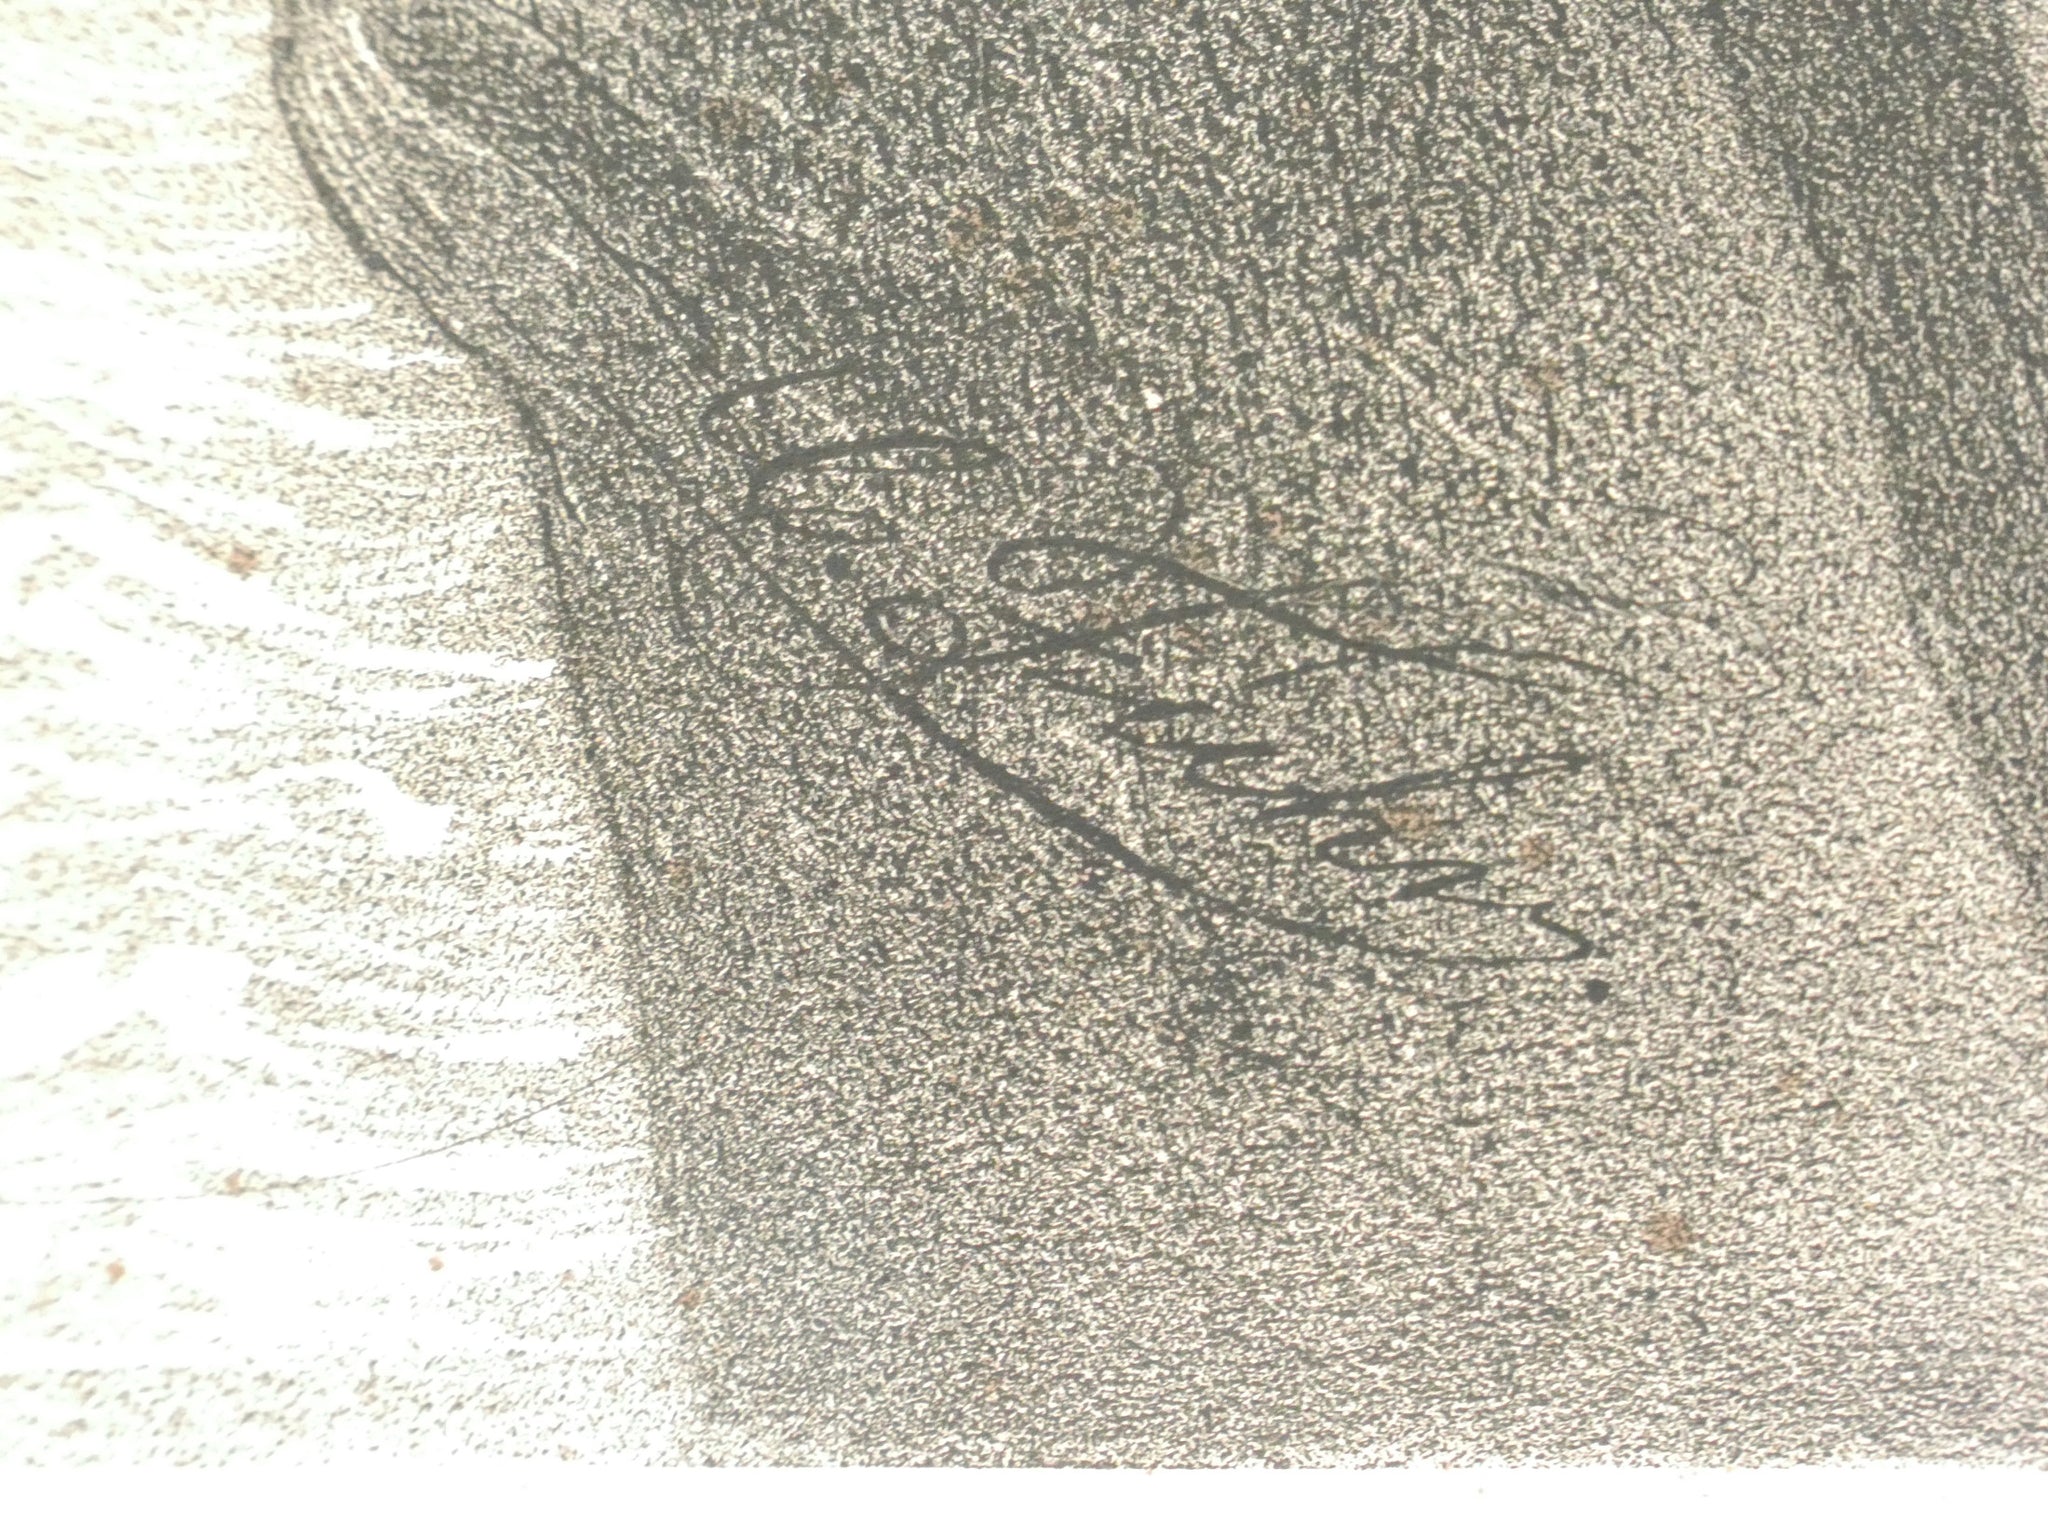 litografia fuhr lafosse delaroche napoleon a sainte helene napoleone 1859 antica